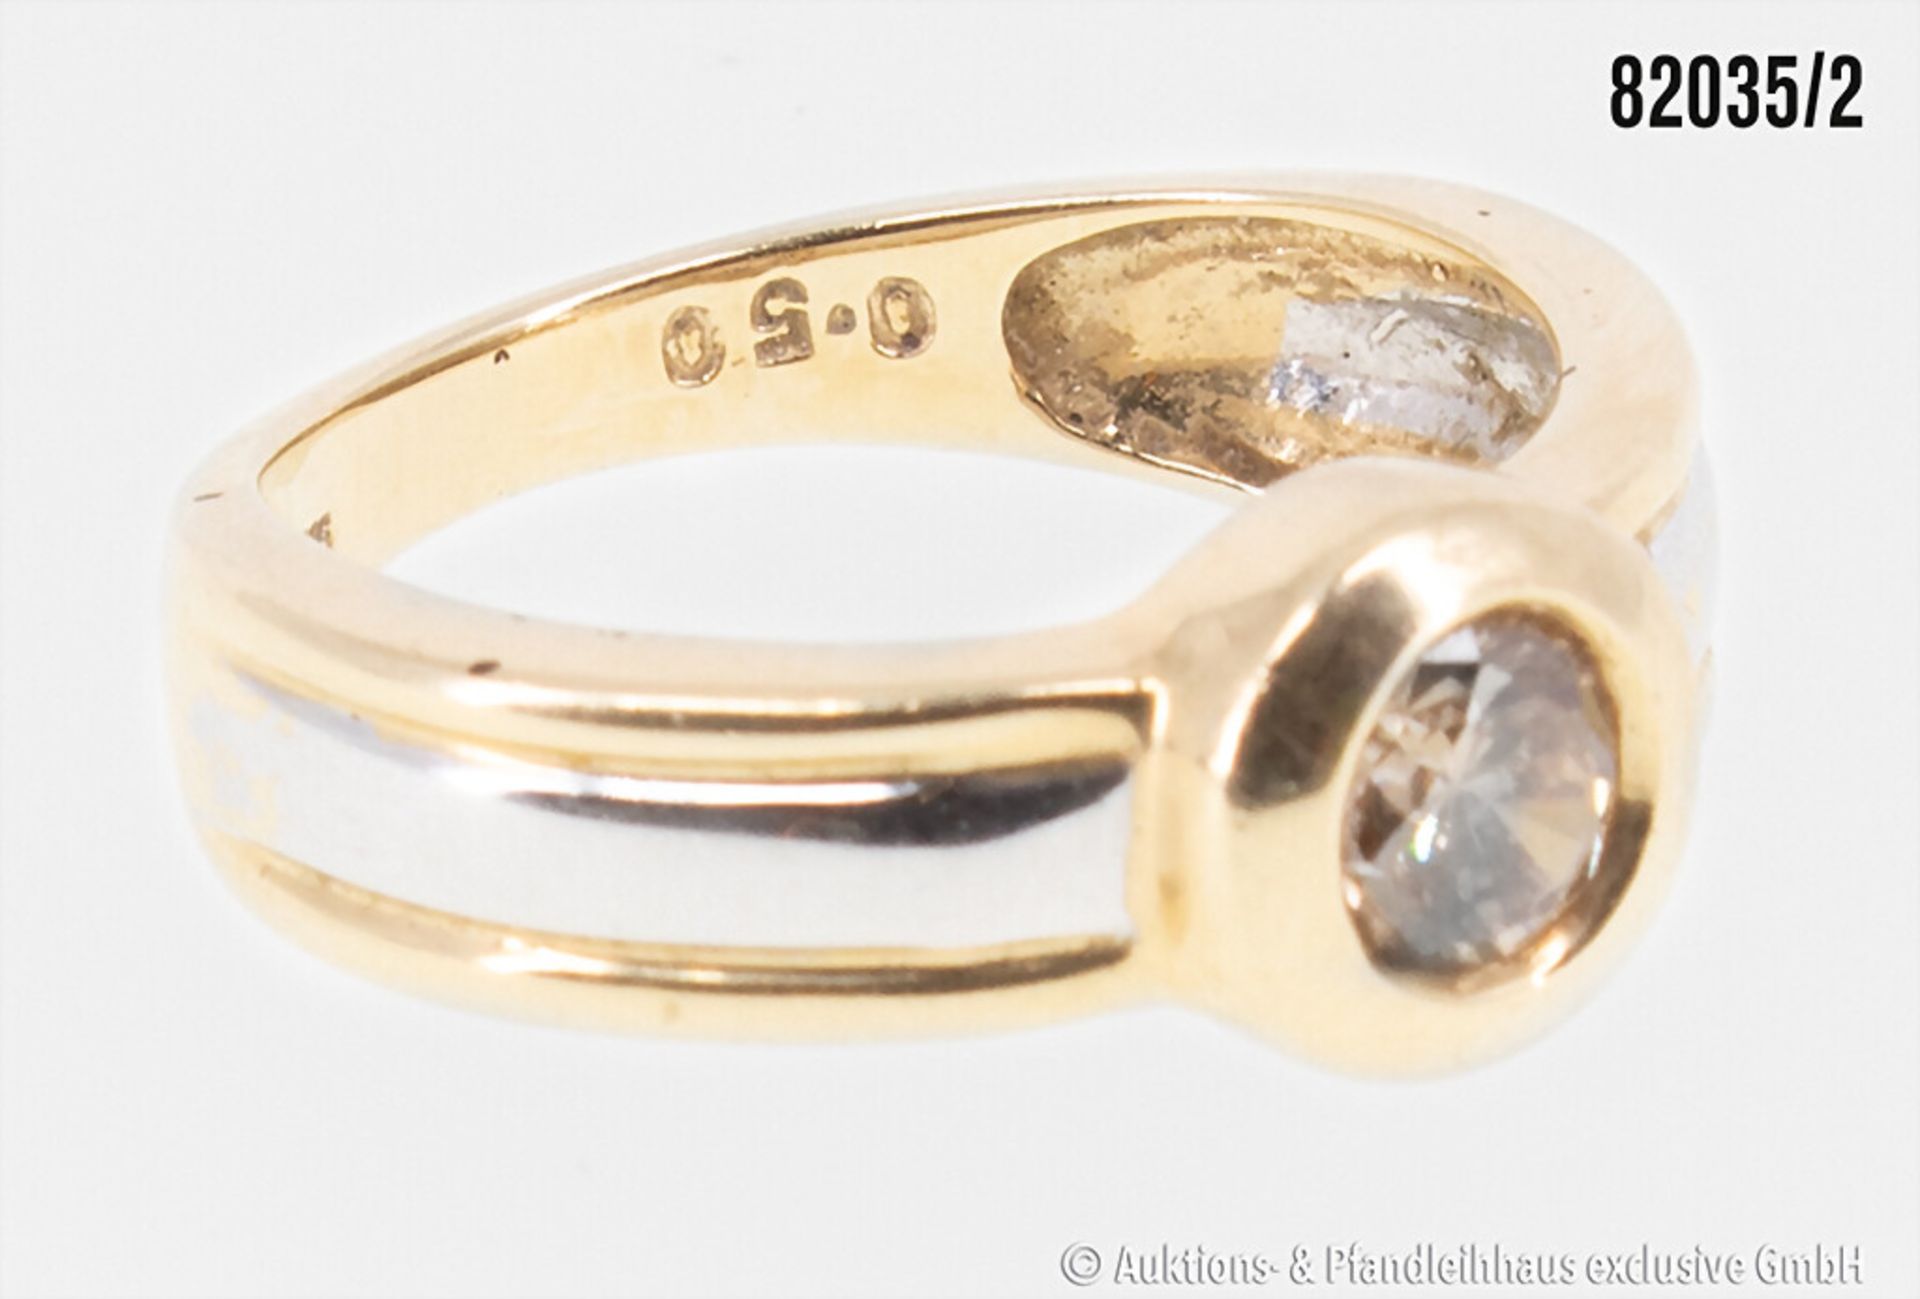 Ring, 585er Gold, mit einem Brillanten, ca. 0,50 ct., braun, 3,9 g, Ringgröße ca. 54, ... - Image 2 of 2